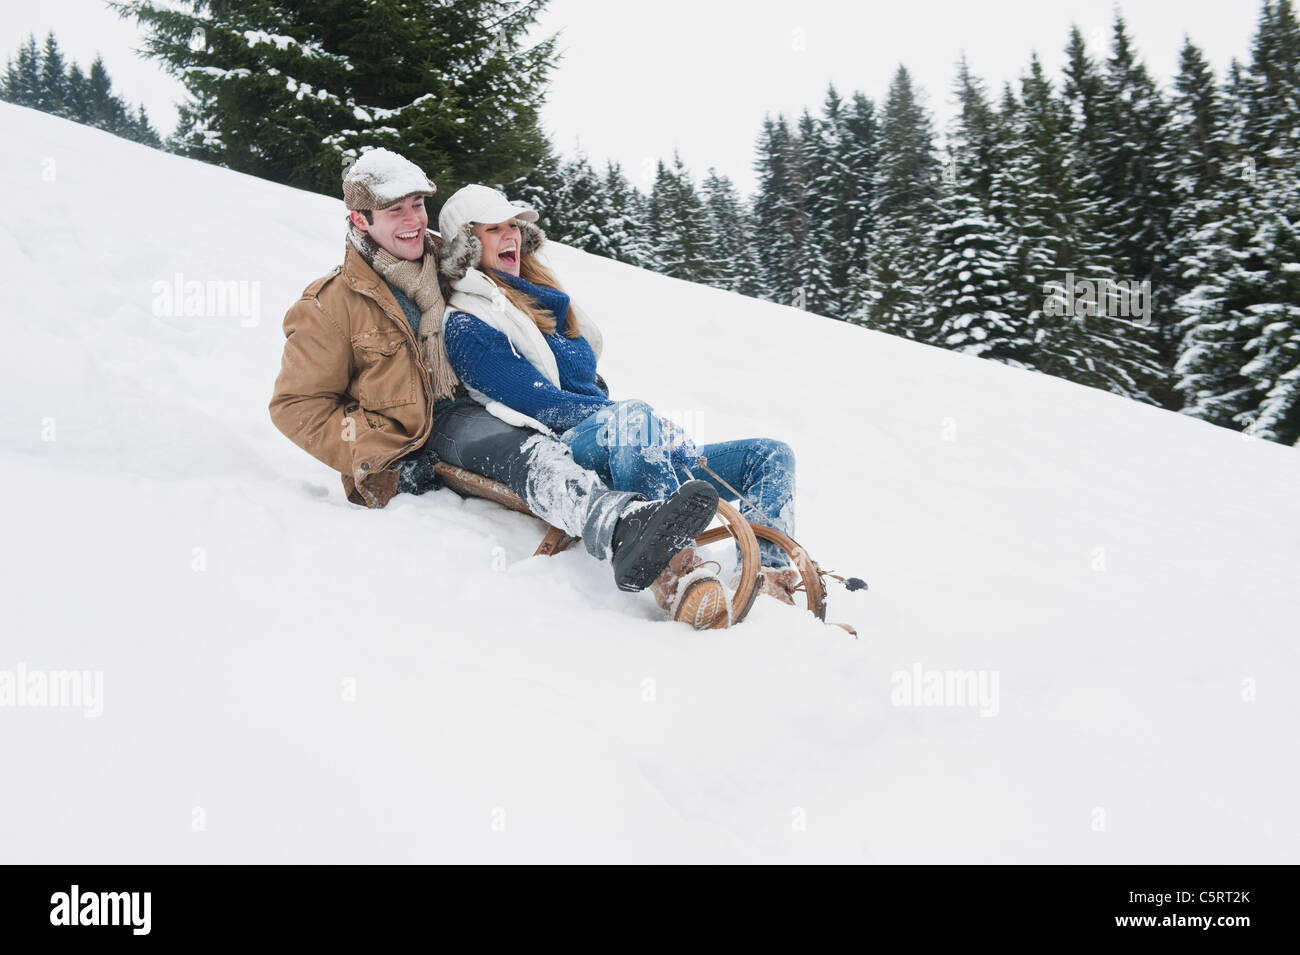 L'Autriche, Pays de Salzbourg, Flachau, jeune homme et femme tobogganging in snow Banque D'Images